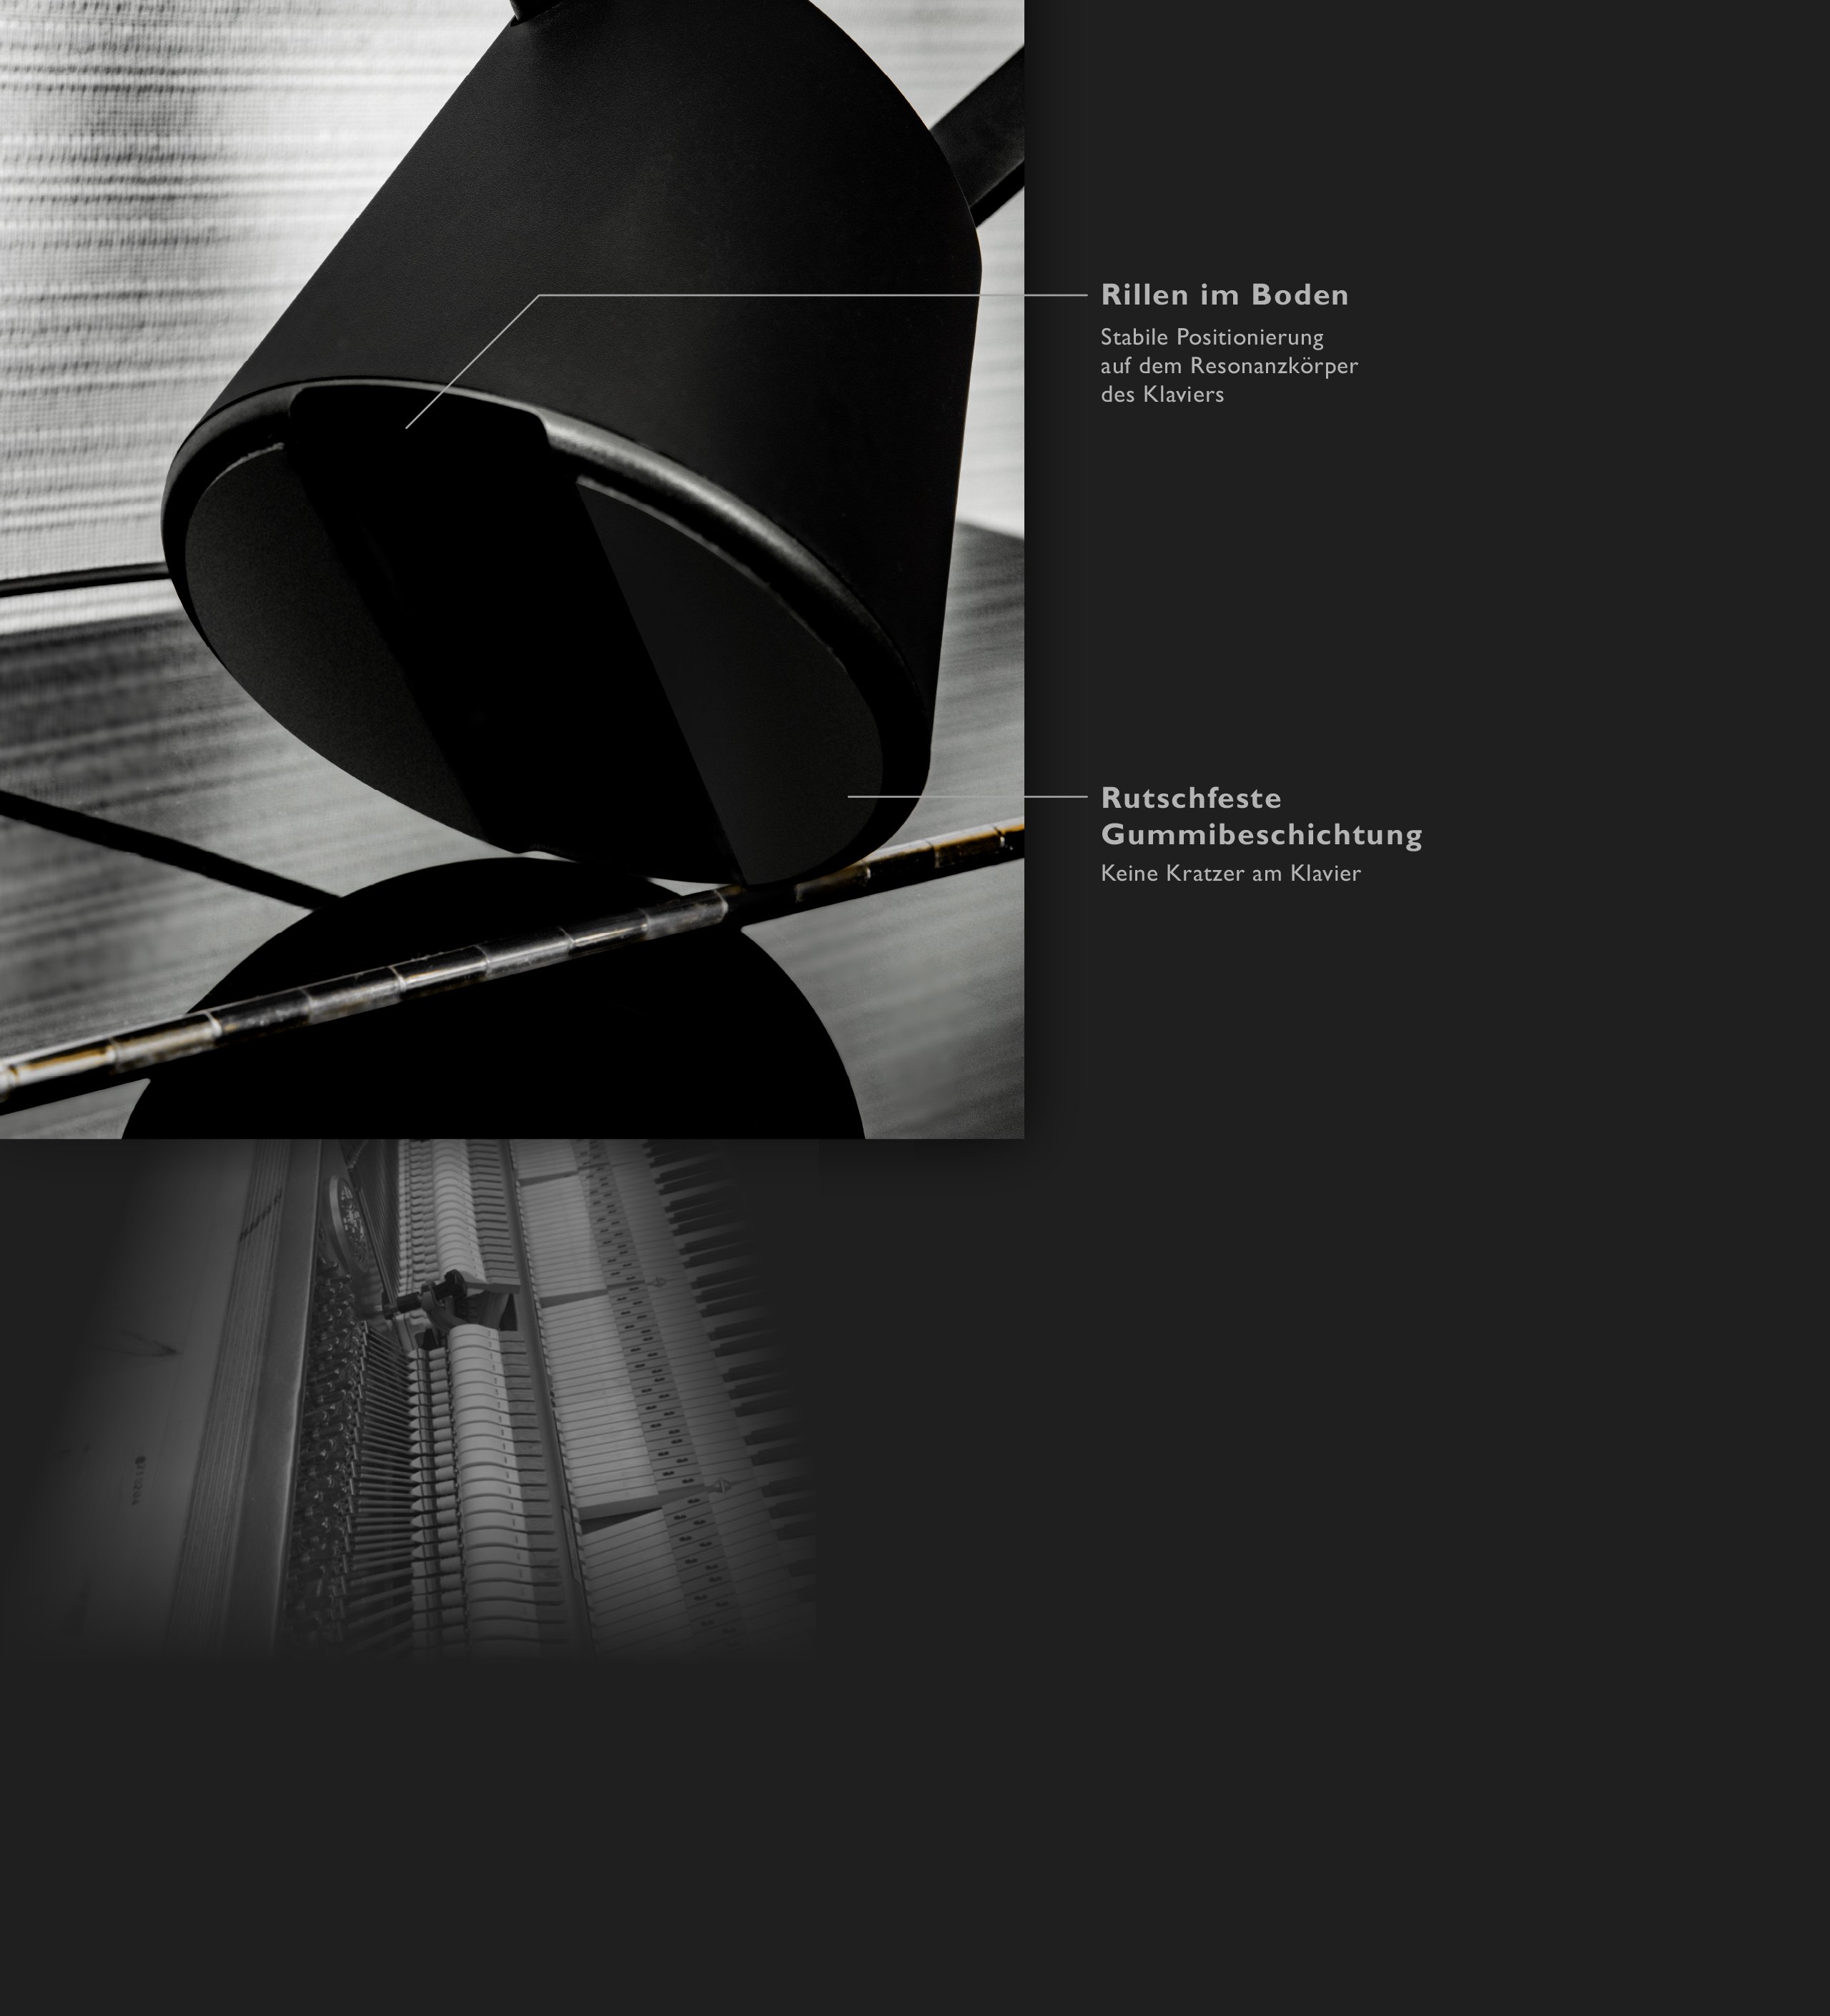 Das Pianolight hat edles Design und hochwertige Verarbeitung